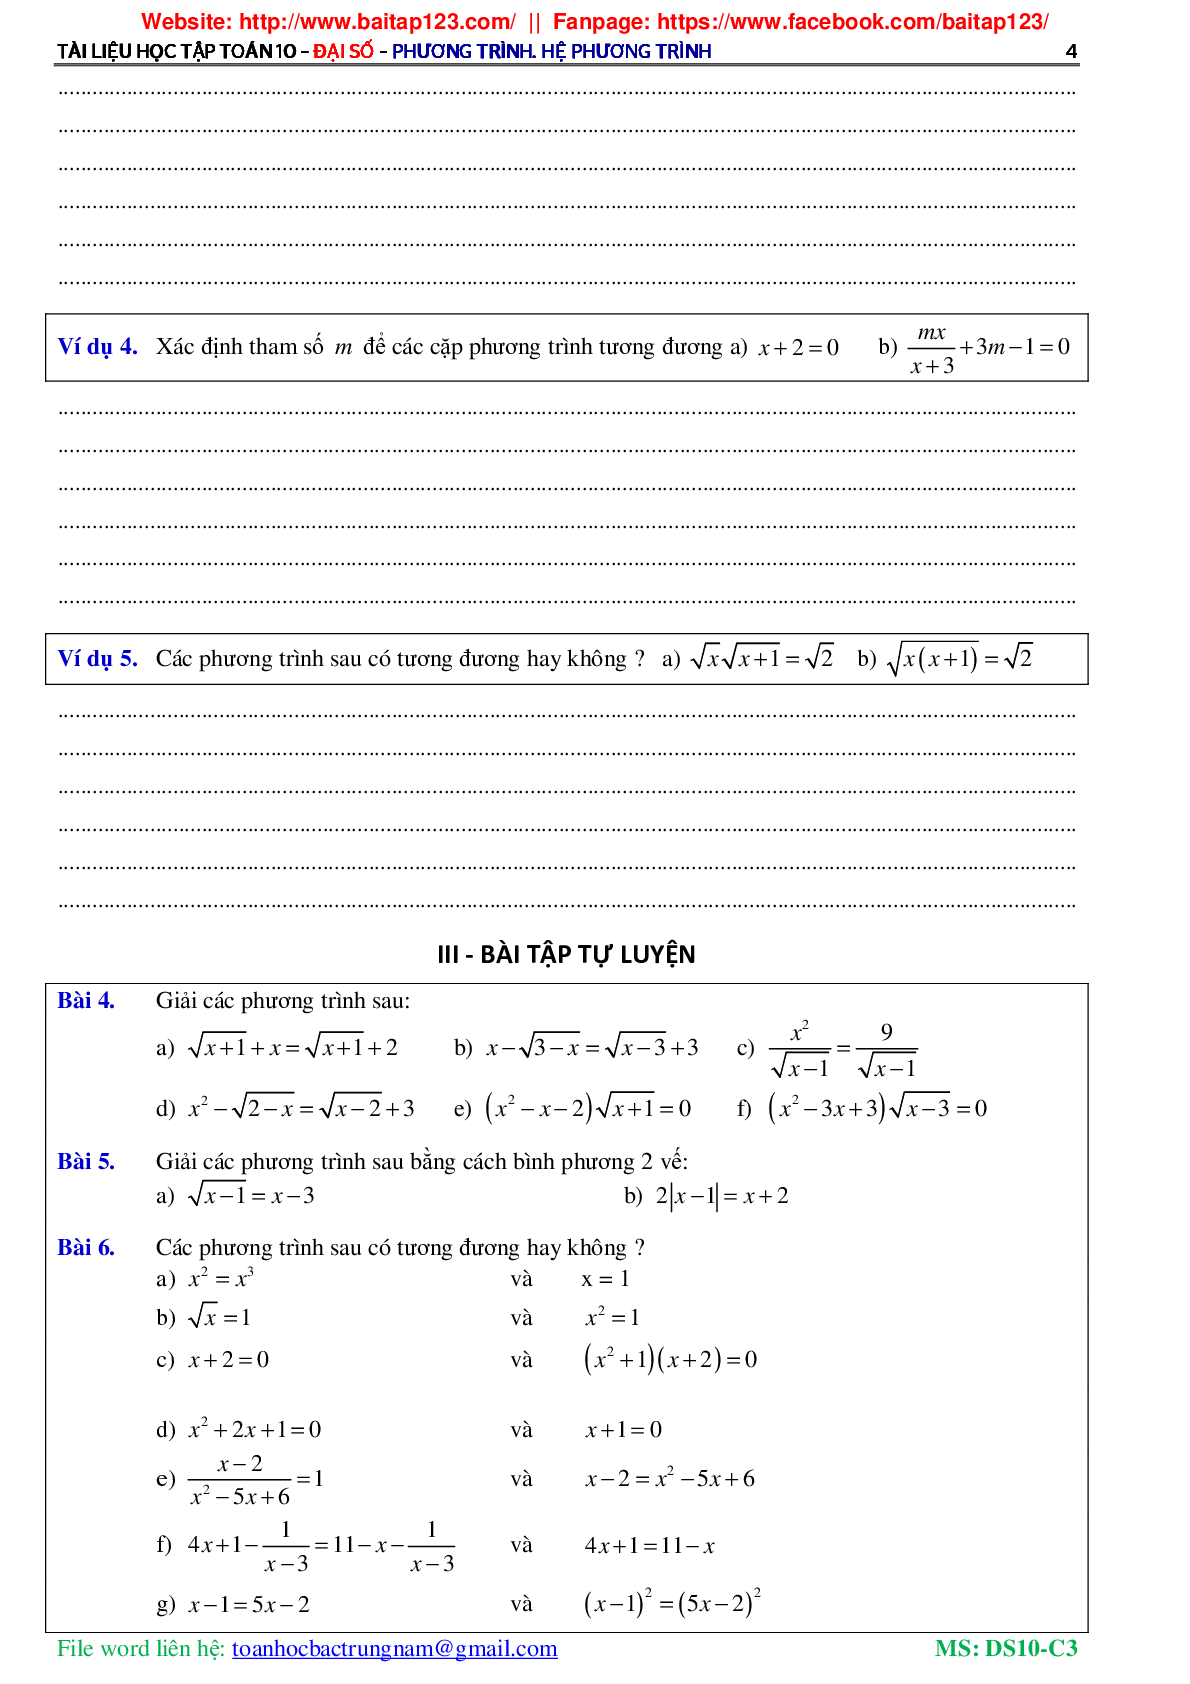 Các dạng toán phương trình và hệ phương trình môn Toán lớp 10 (trang 5)